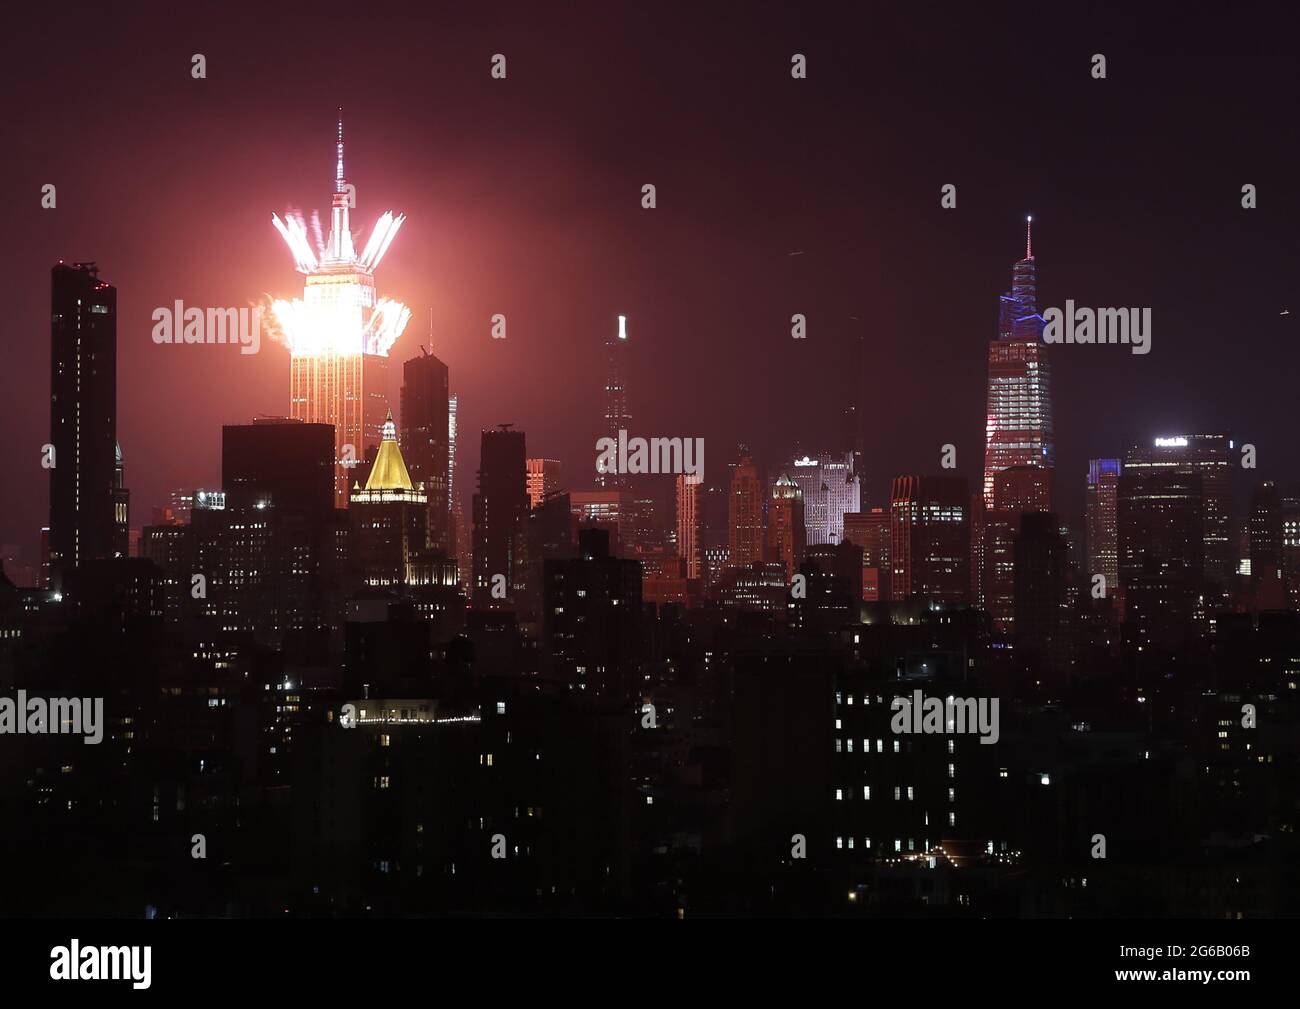 New York, Usa. Juli 2021. Feuerwerk explodiert über dem Empire State Building und der Skyline von Manhattan für das jährliche Macy's Feuerwerk am 4. Juli zum Unabhängigkeitstag am Sonntag, dem 4. Juli 2021 in New York City. Foto von John Angelillo/UPI Credit: UPI/Alamy Live News Stockfoto